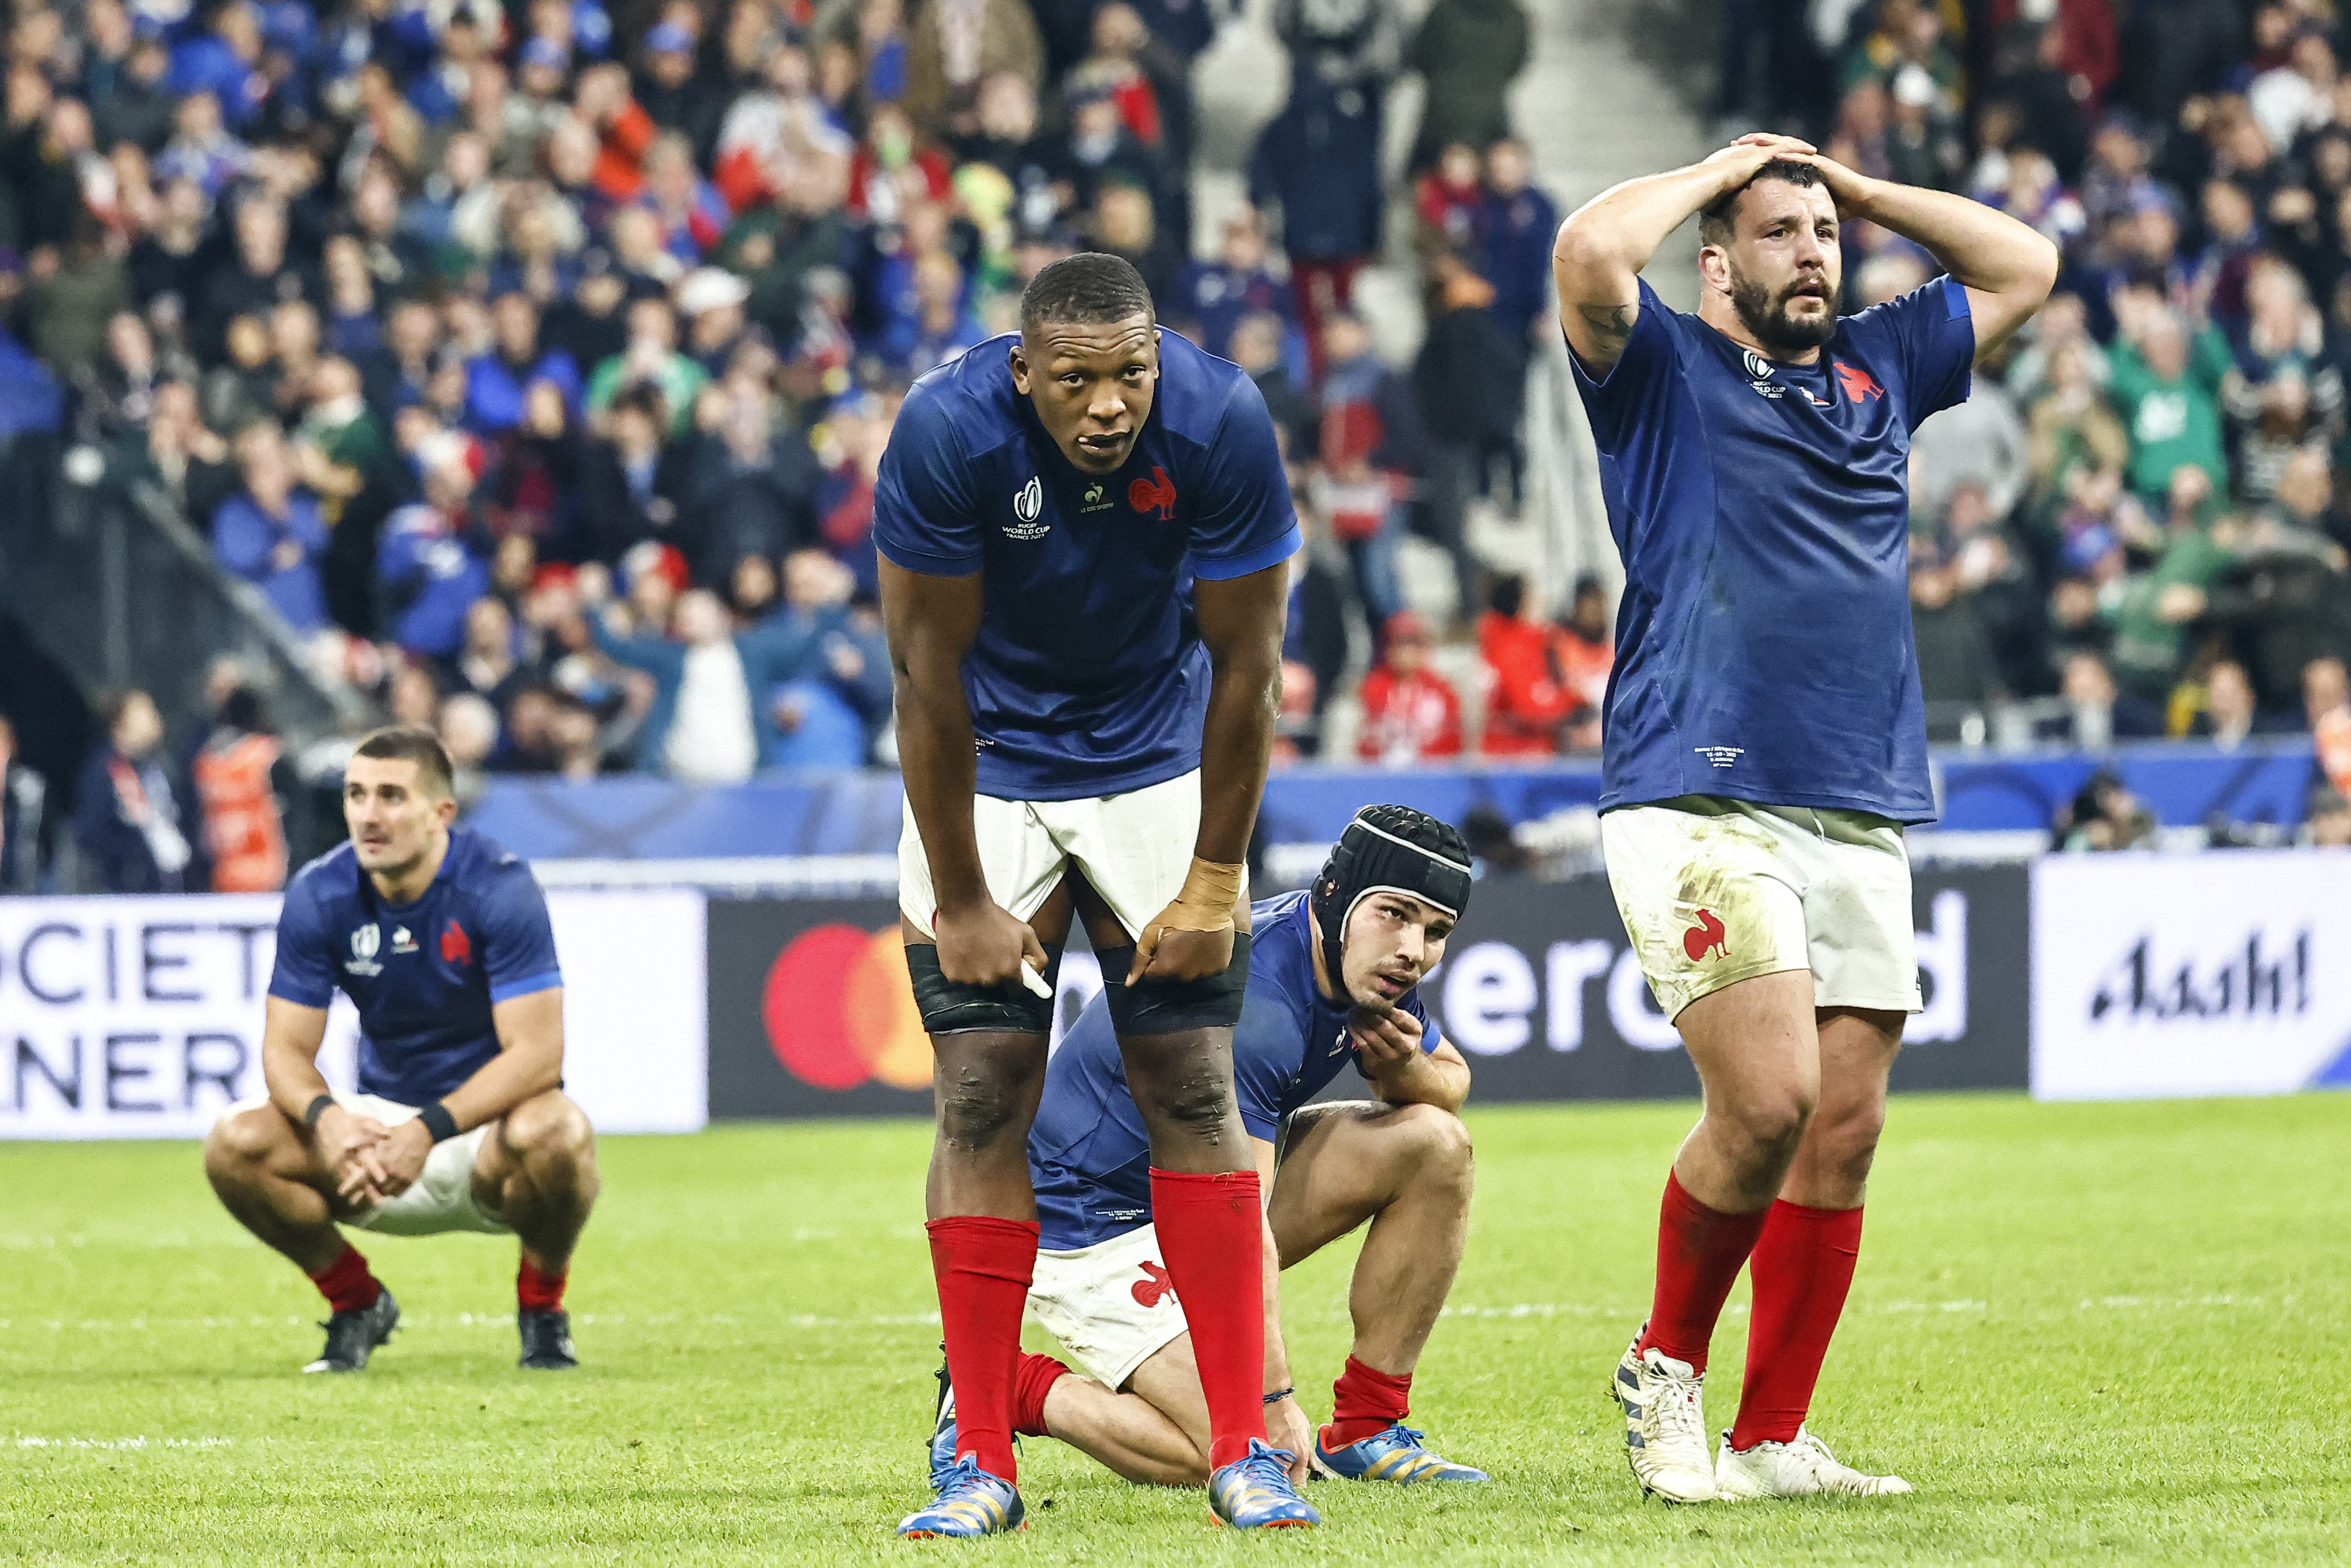 Les joueurs du XV de France, ici juste après l'élimination d'un point contre l'Afrique du Sud (28-29), tentent de tourner la page. Et ce n'est pas simple... LP/Olivier Corsan